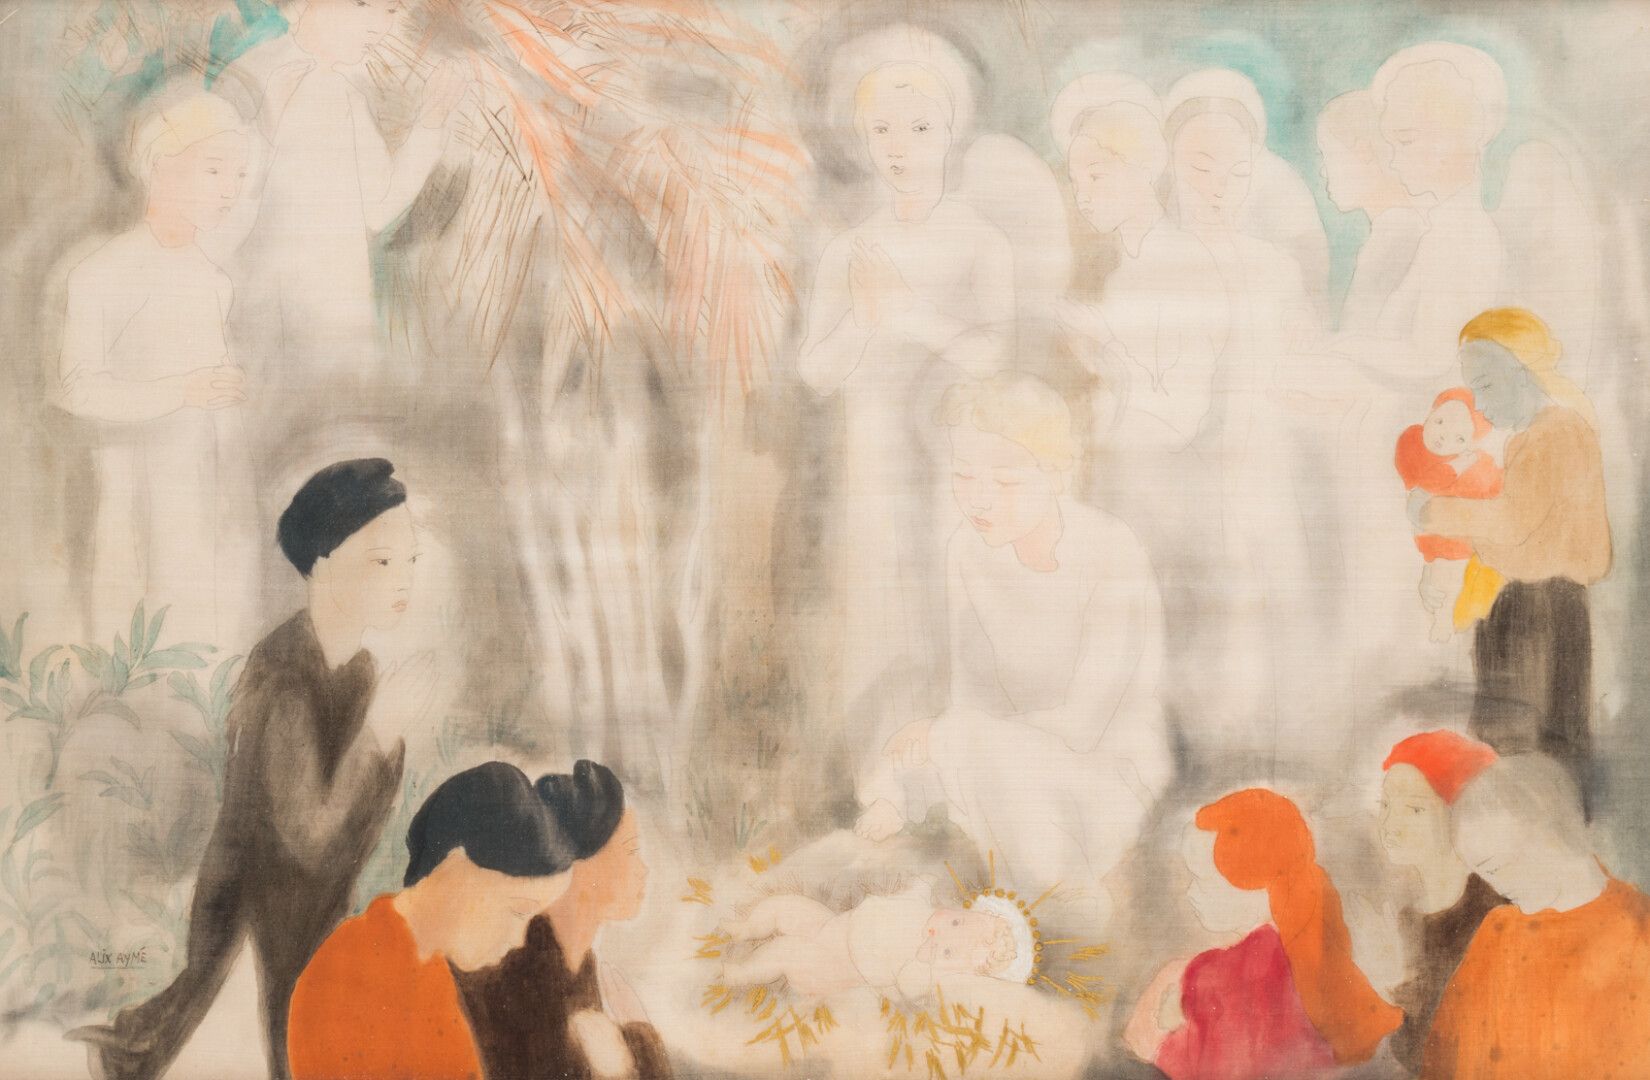 ALIX AYMÉ (1894-1989) 阿里克斯-艾梅(1894-1989)

耶稣诞生的场景

丝绸上的水墨画，左下角有签名

32,5 x 65 cm